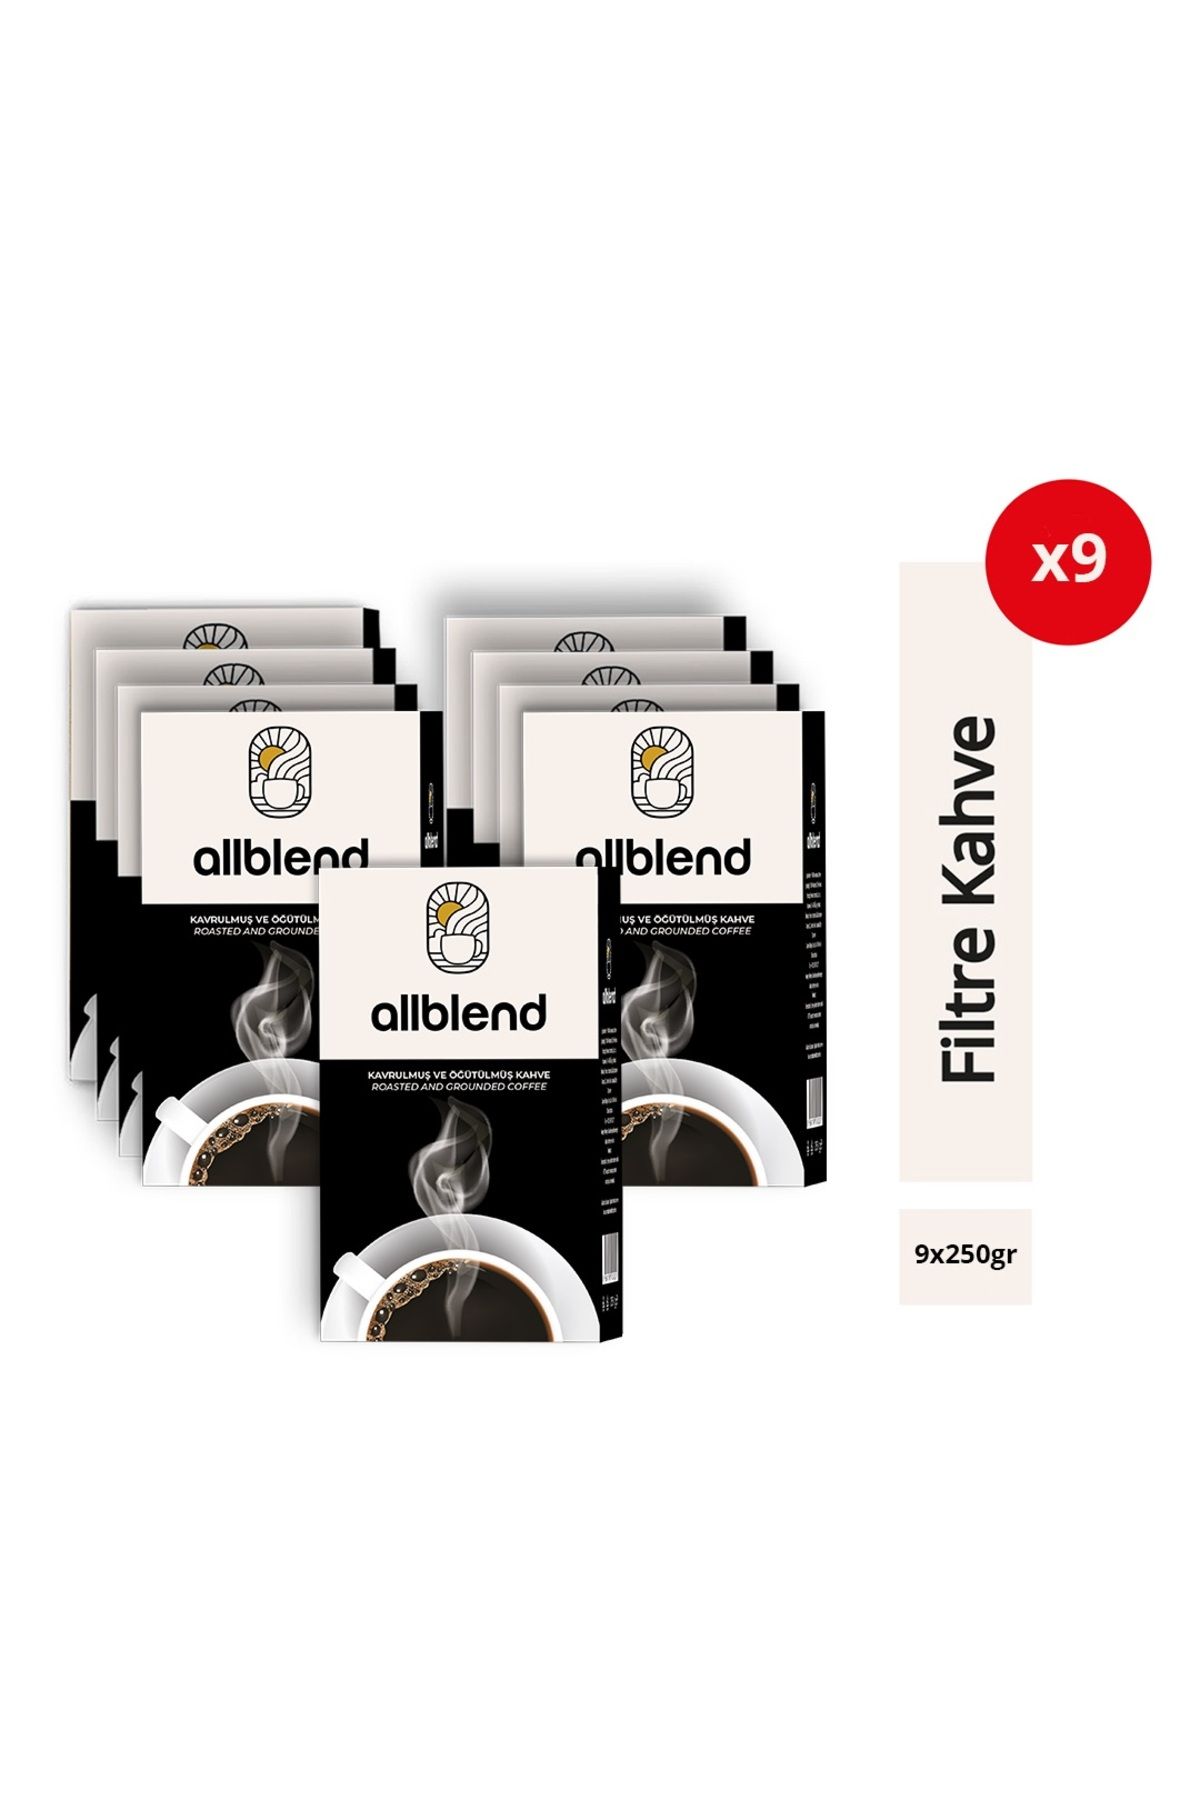 AllBlend Filtre Kahve 250 gr. x 9 Adet AB250X9